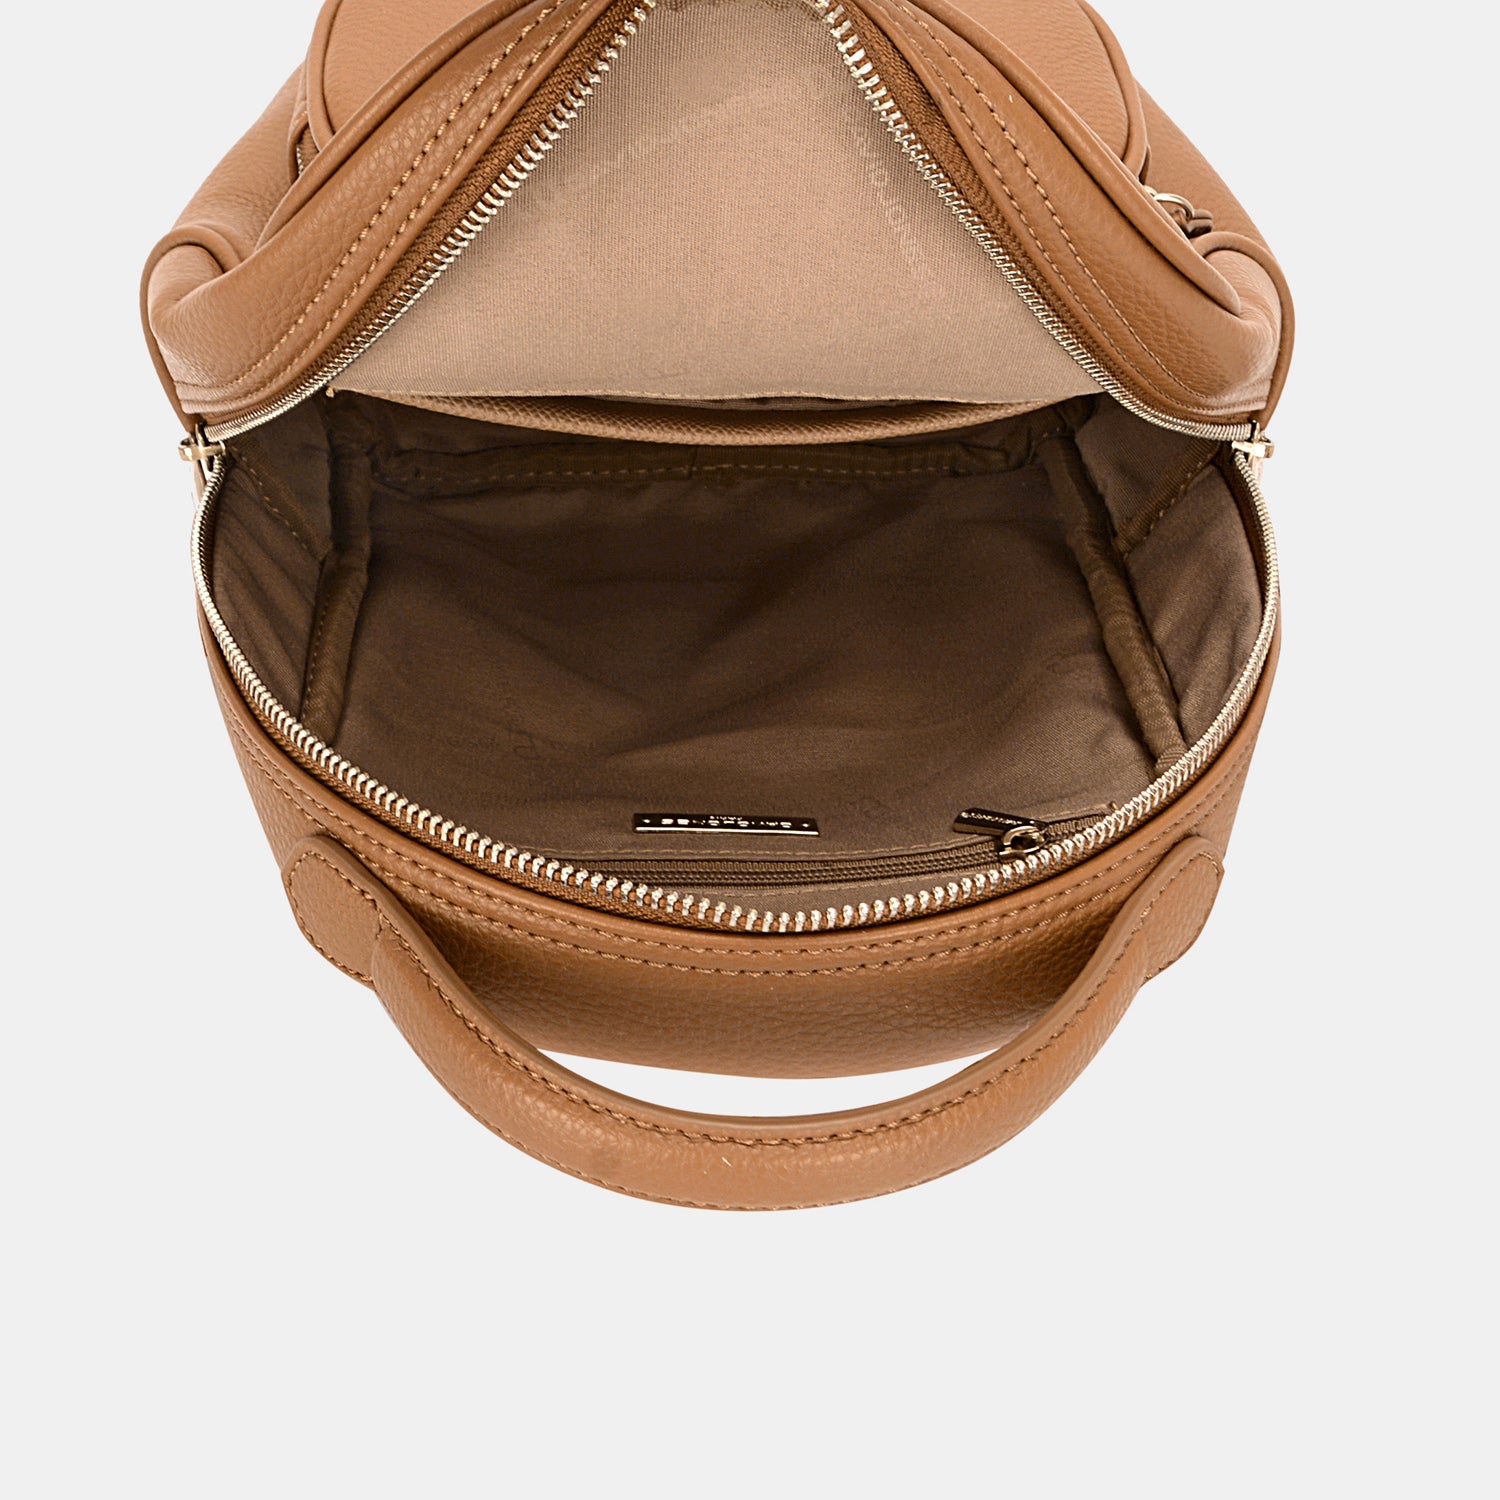 TEEK - Arched Handle Backpack BAG TEEK Trend   